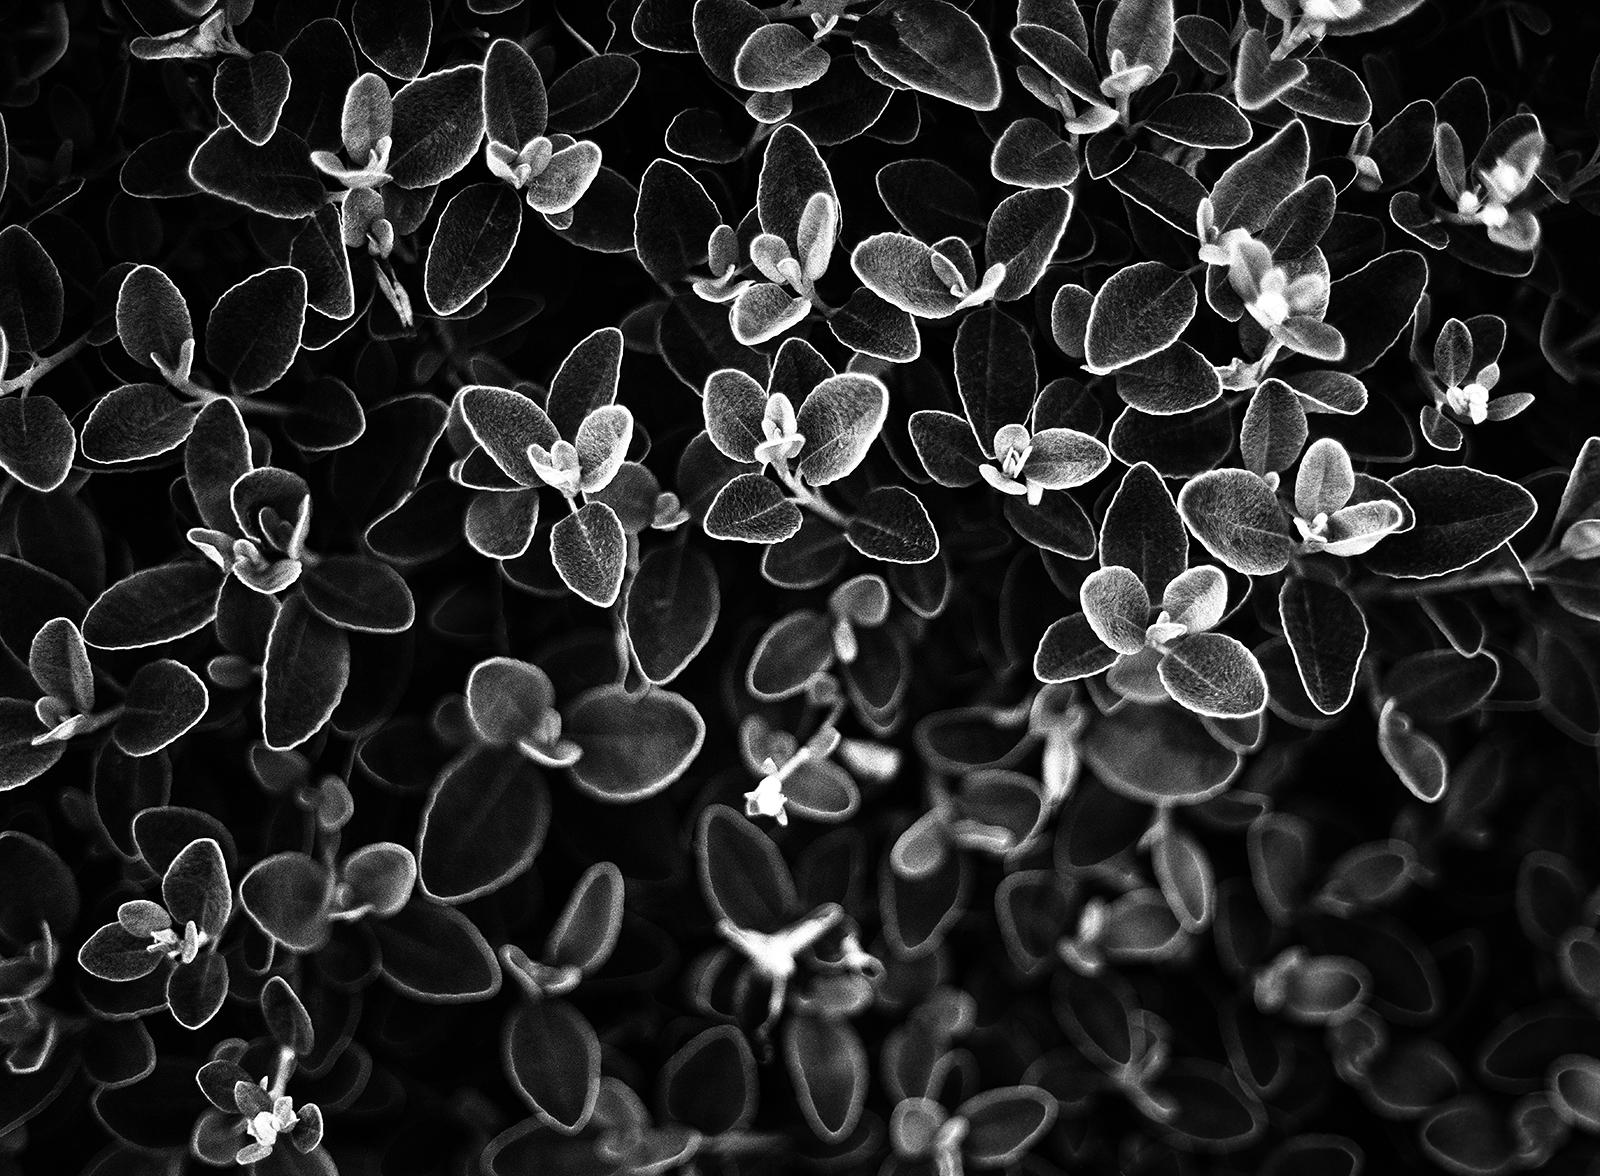 Blumenblumen- signierter Kunstdruck in limitierter Auflage, Schwarz-Weiß-Foto, zeitgenössisch (Moderne), Photograph, von Ian Sanderson